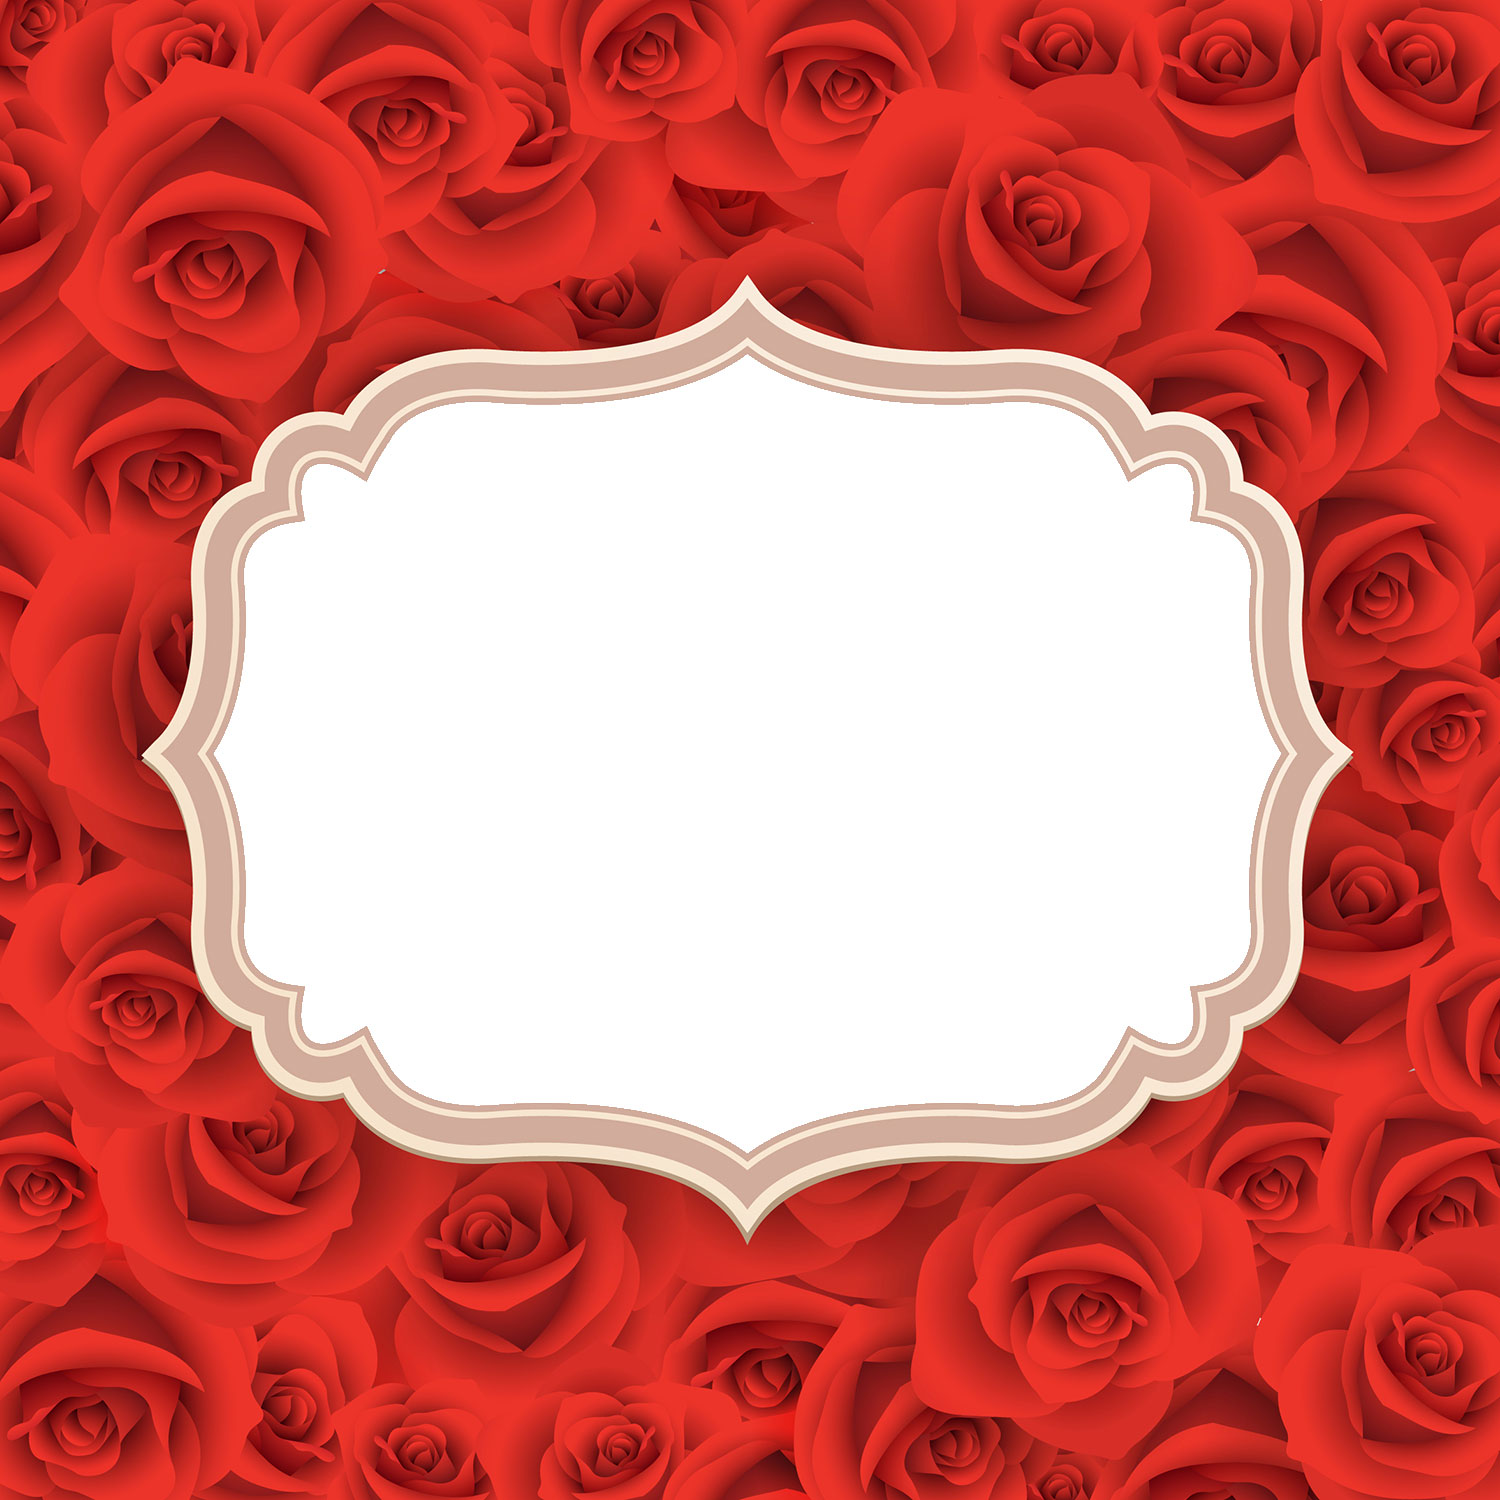 画像サンプル-真紅のバラのフレーム